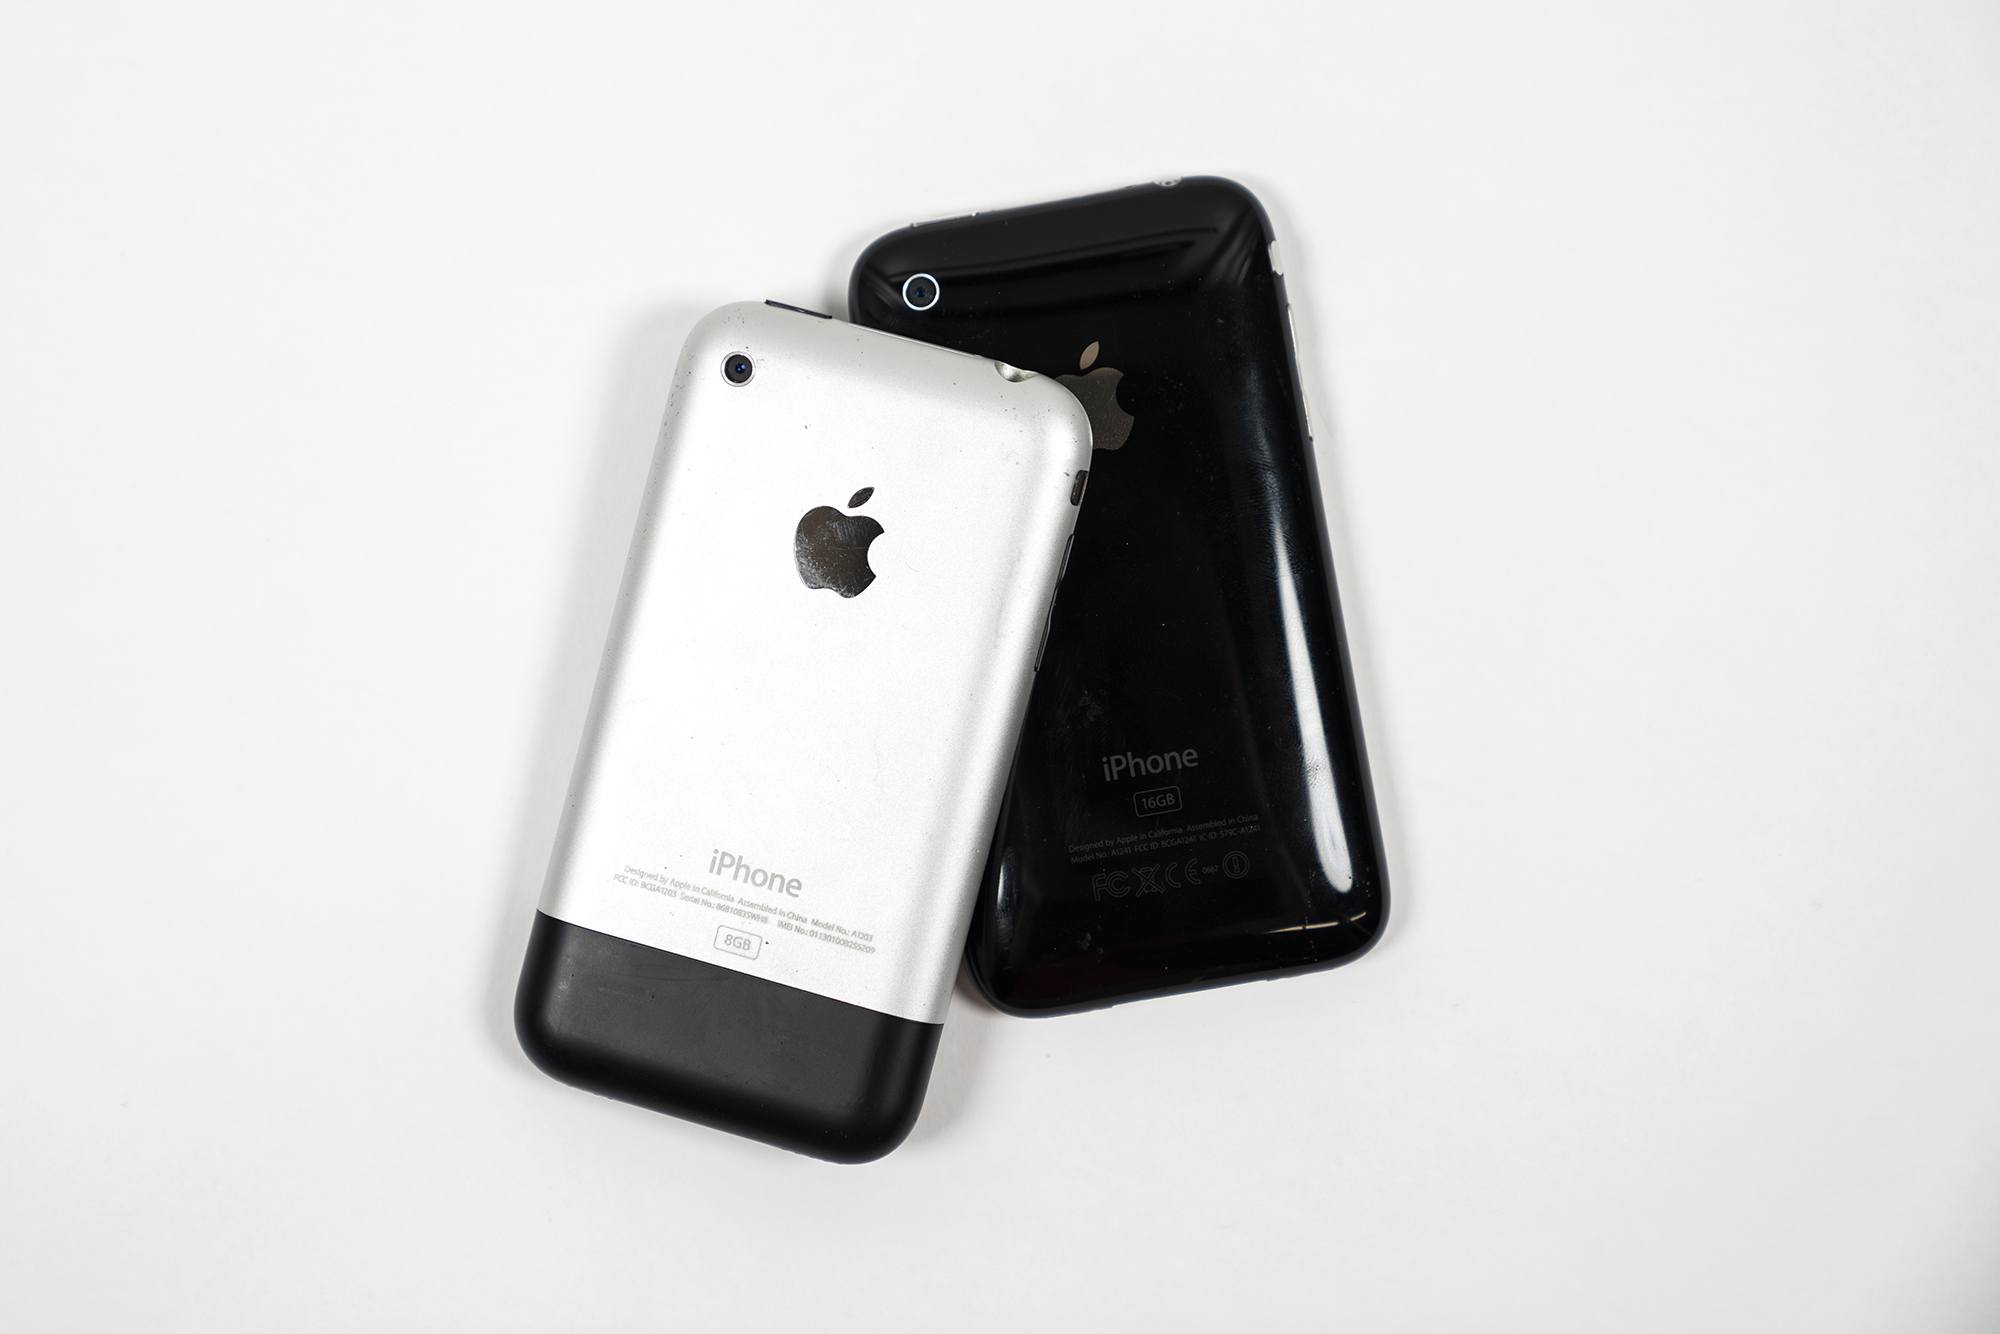 Айфон 1 какого года. Iphone 2g и 3g. Iphone 3g 8gb. Самый первый айфон iphone 2g. Айфон 3g год.